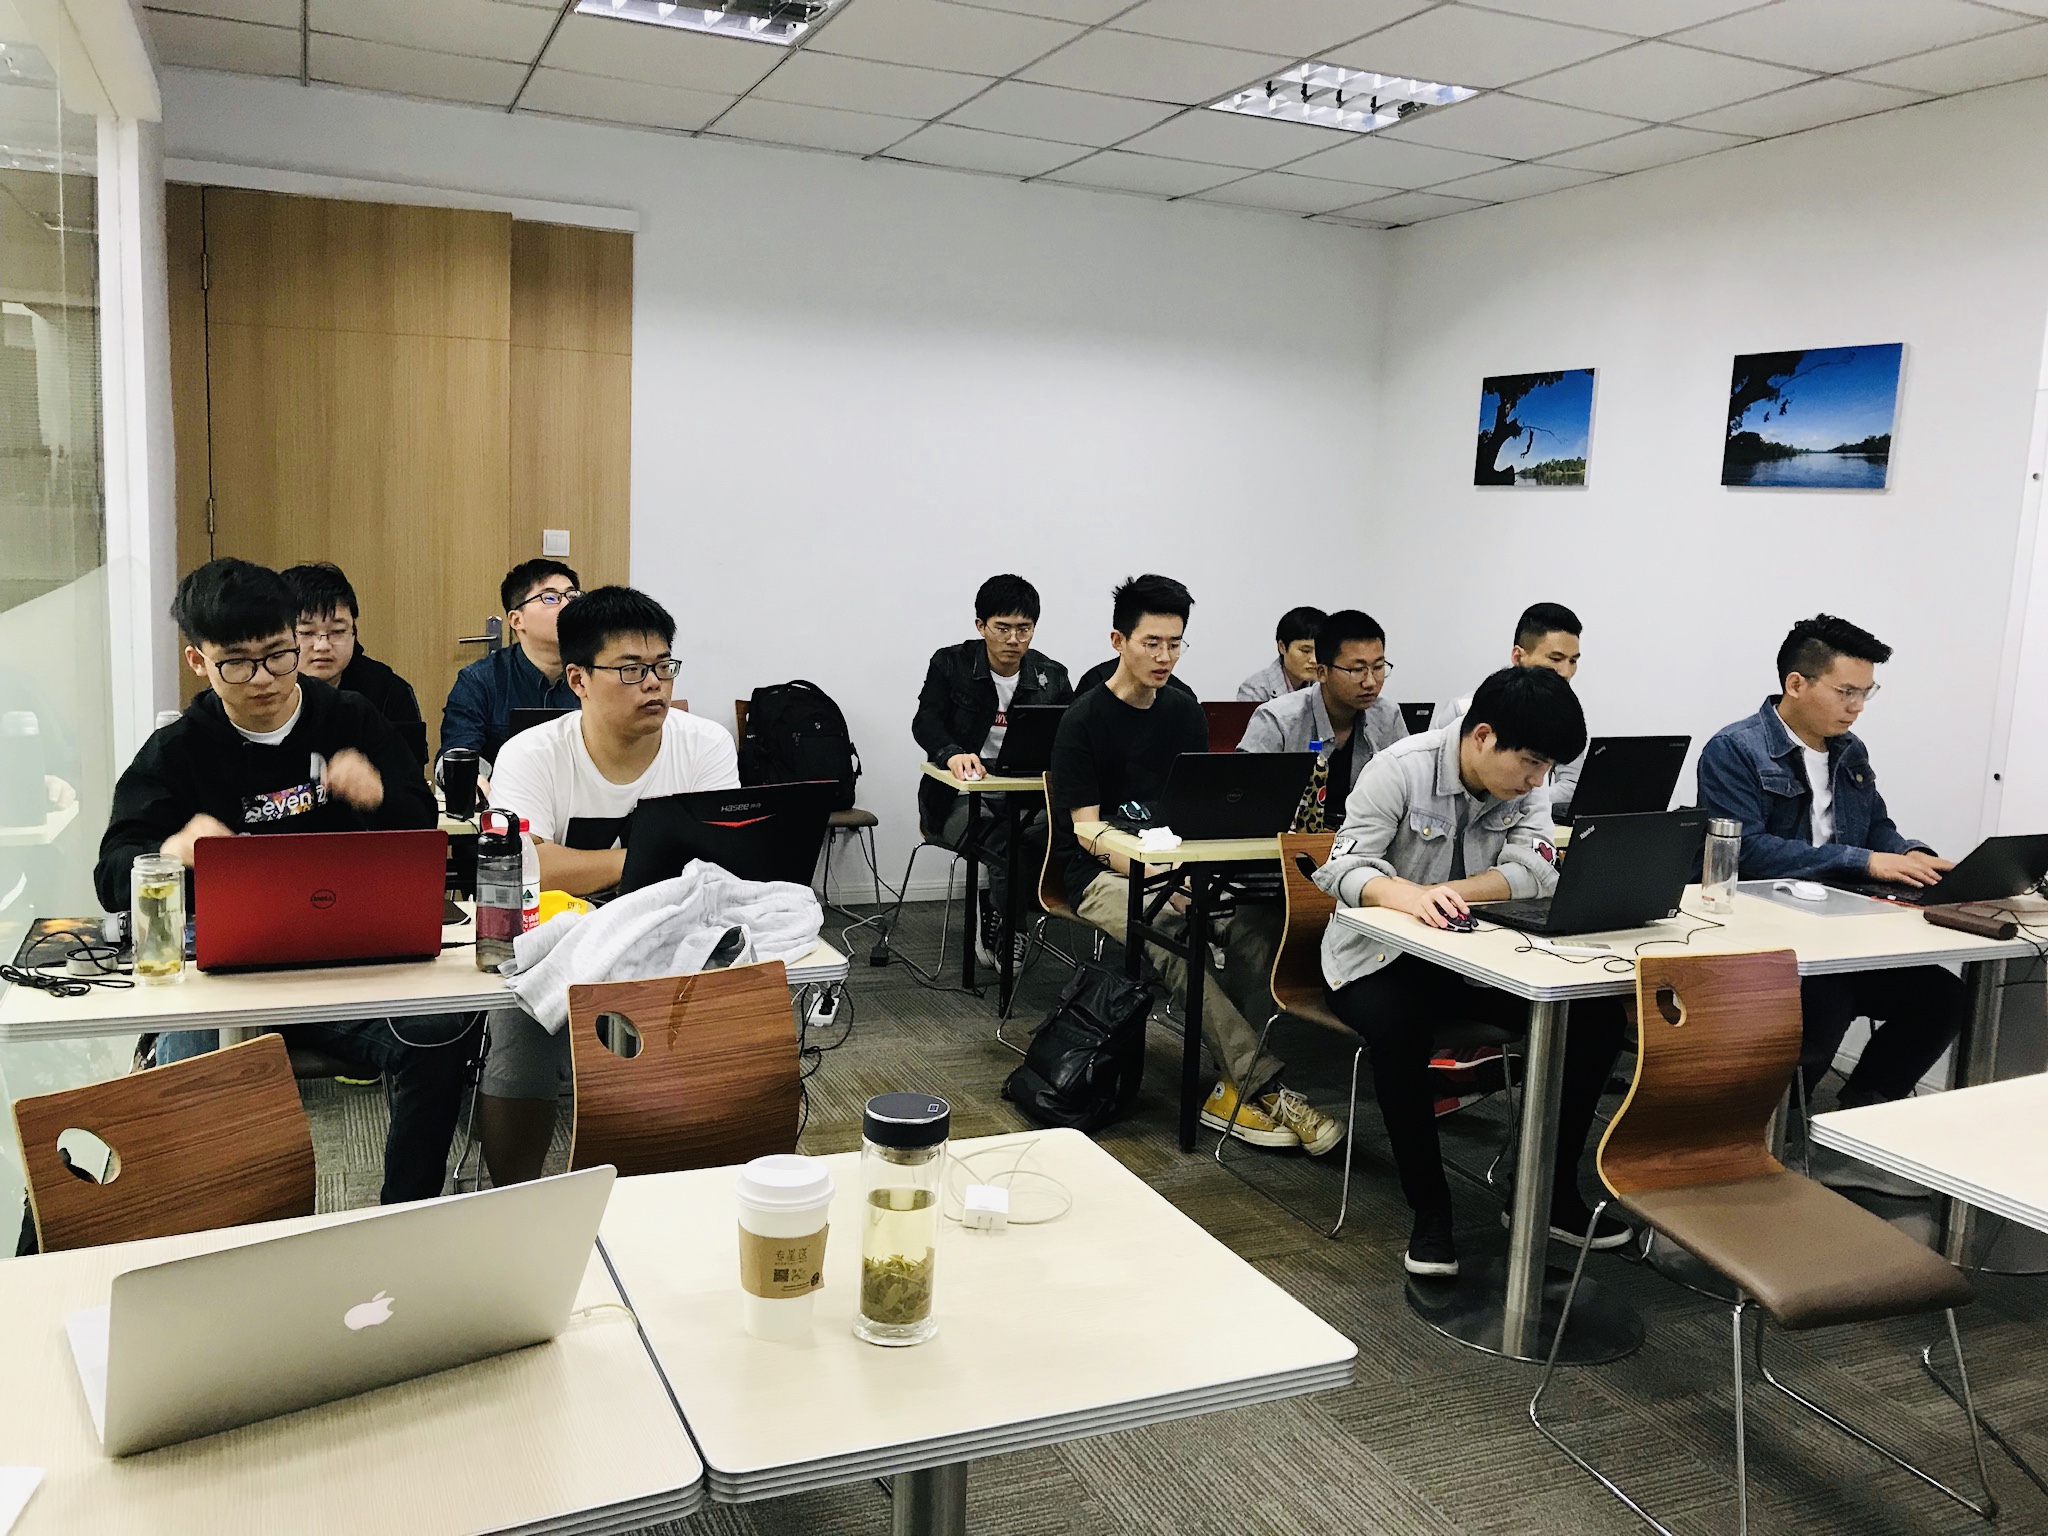 iS-RPA 高级设计师培训 - 上海 20190513 班 - 培训完成